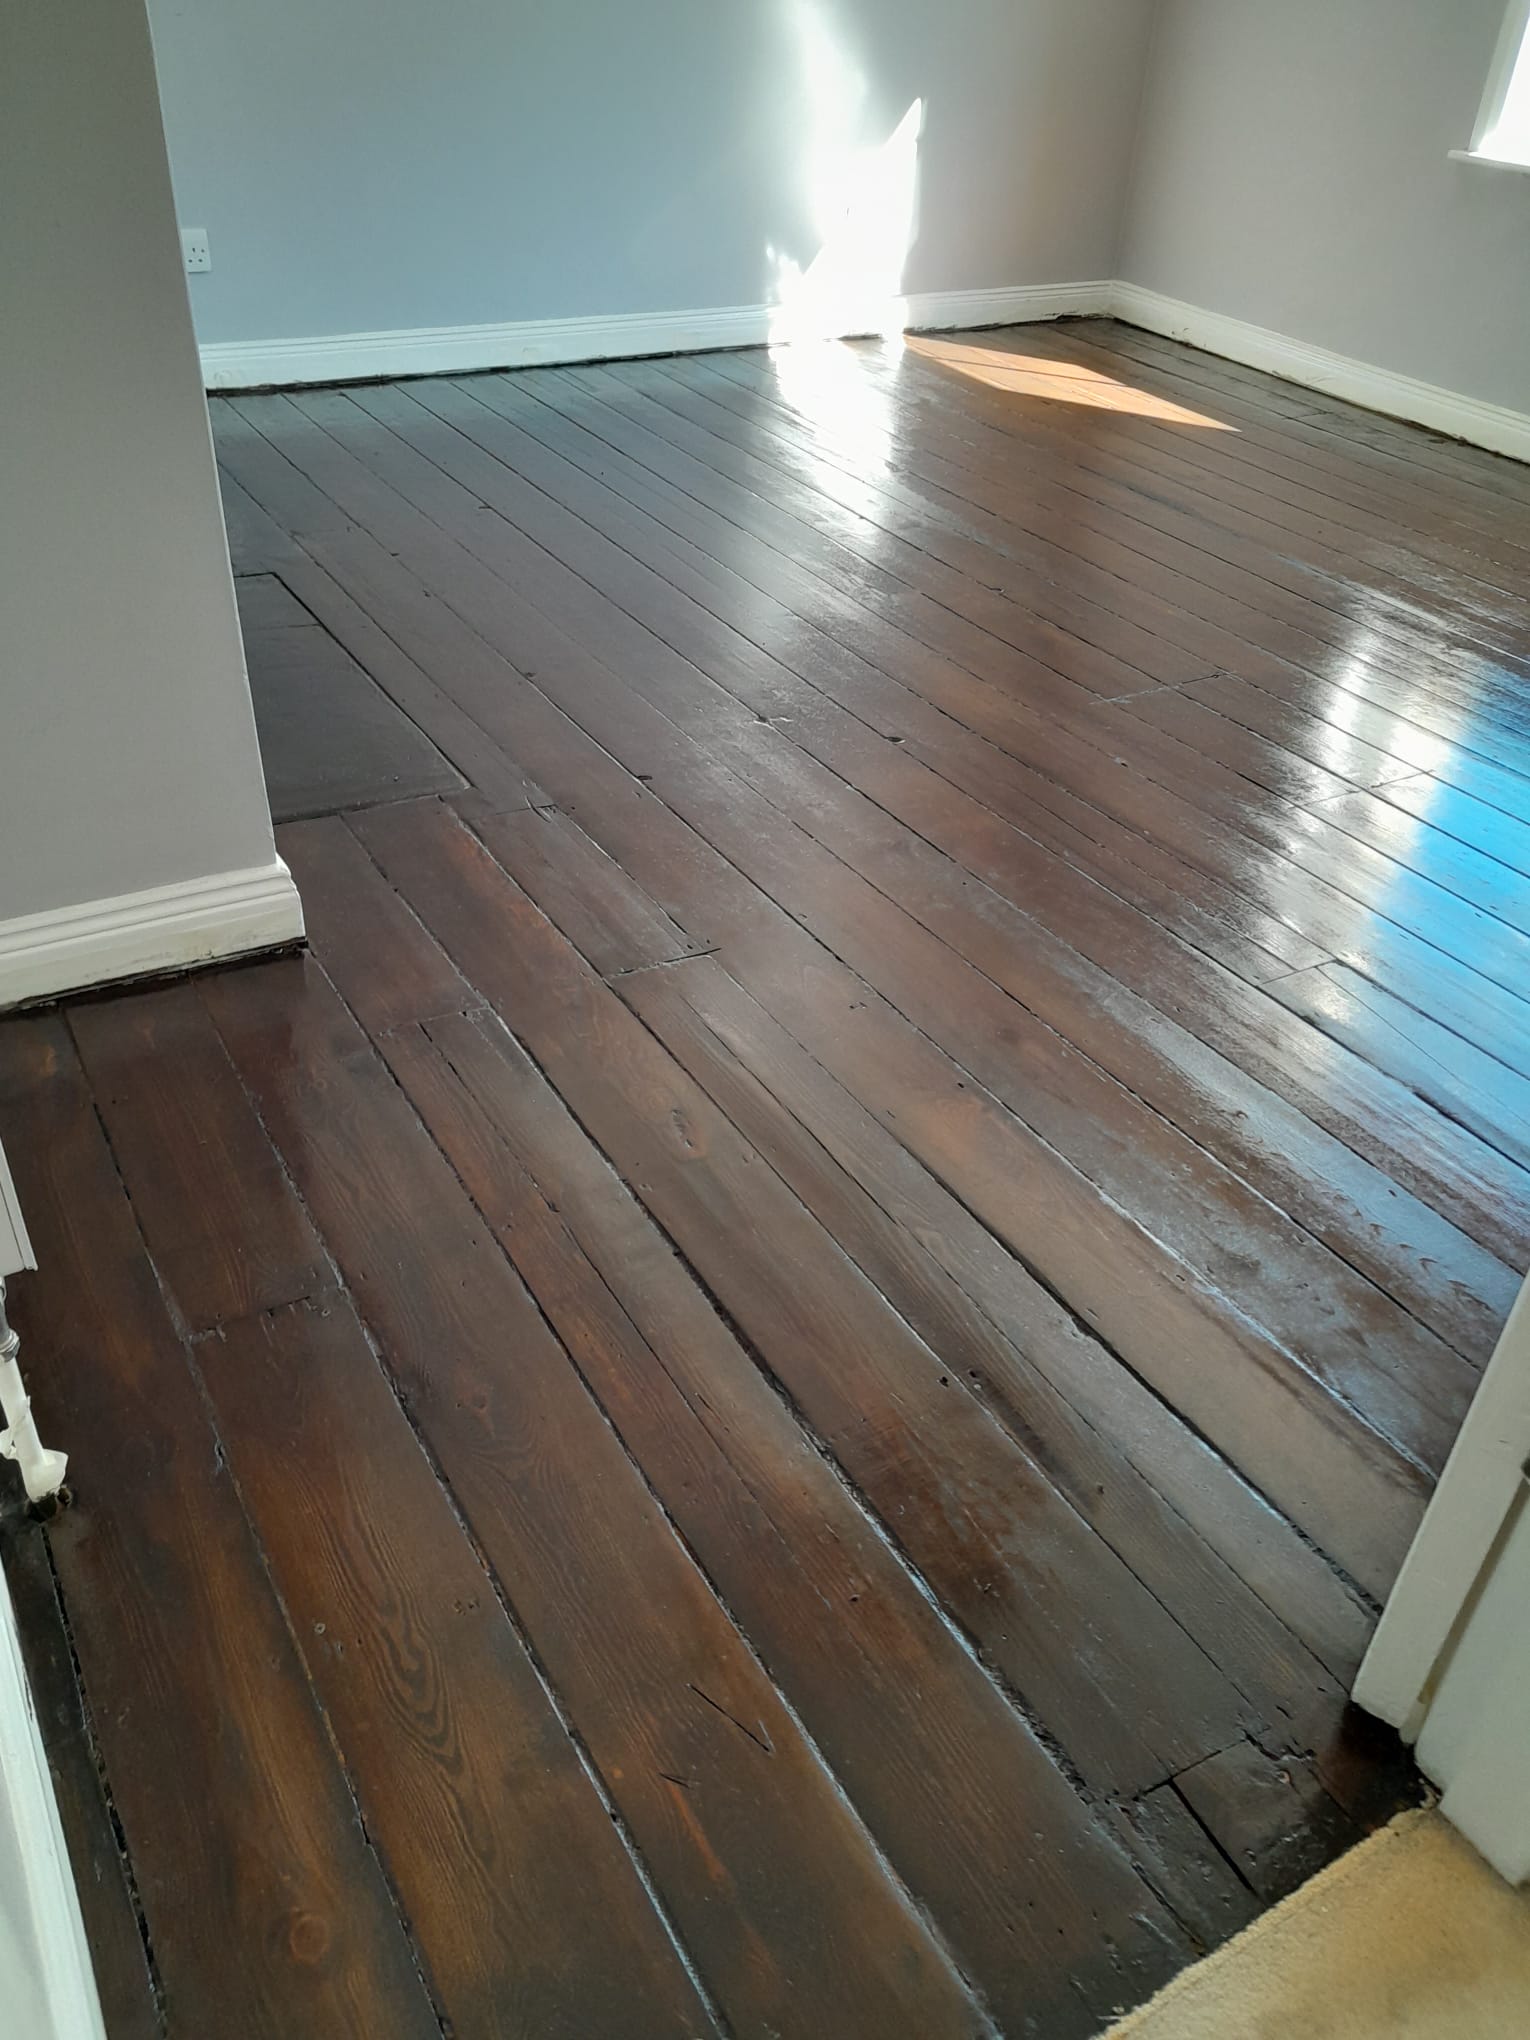 wooden floor restoration work